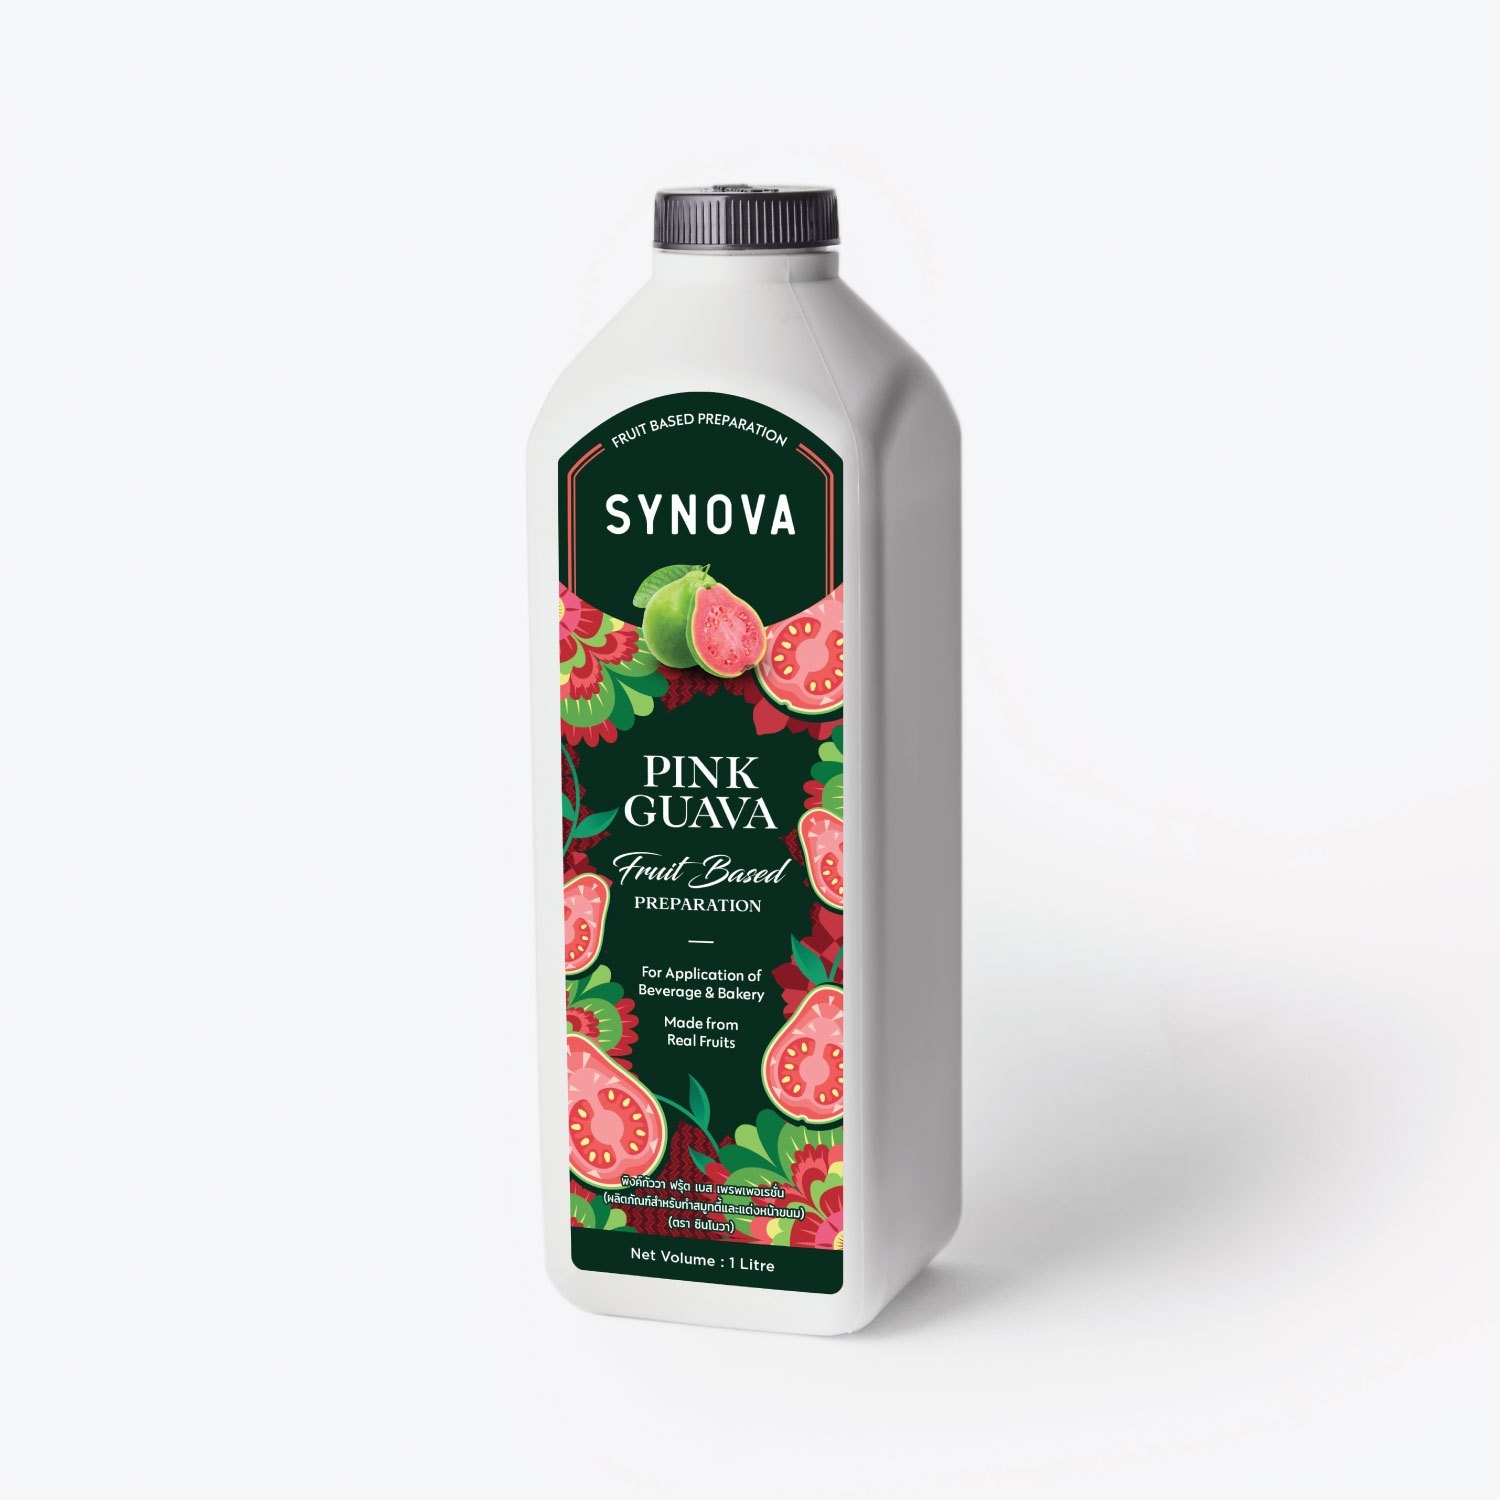 น้ำผลไม้เข้มข้น : SYNOVA ซอสฝรั่งชมพูเข้มข้น (ยกกล่อง)